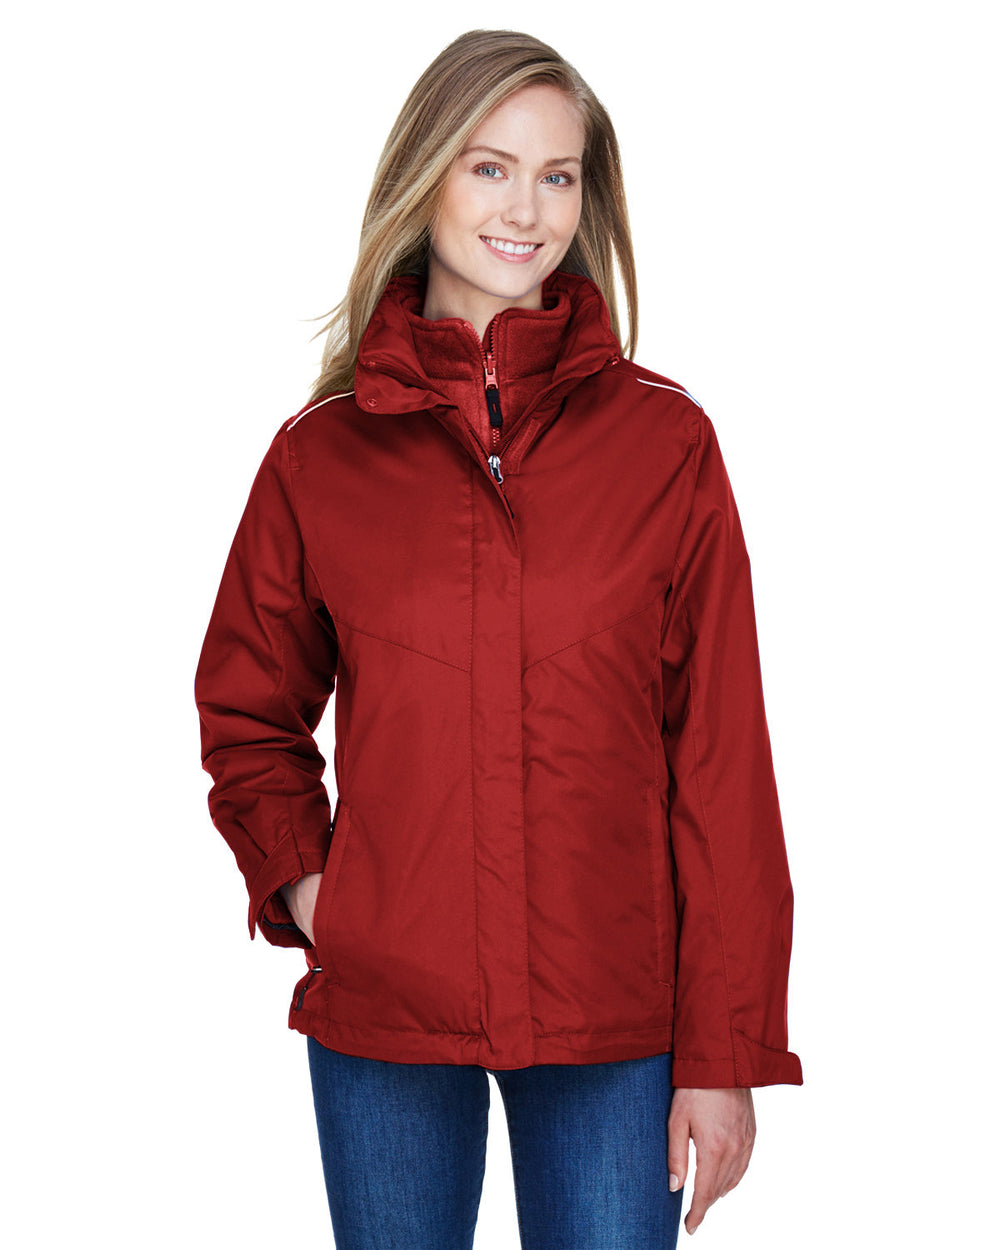 Core 365 78205 Ladies' Region 3-in-1 Jacket with Fleece Liner